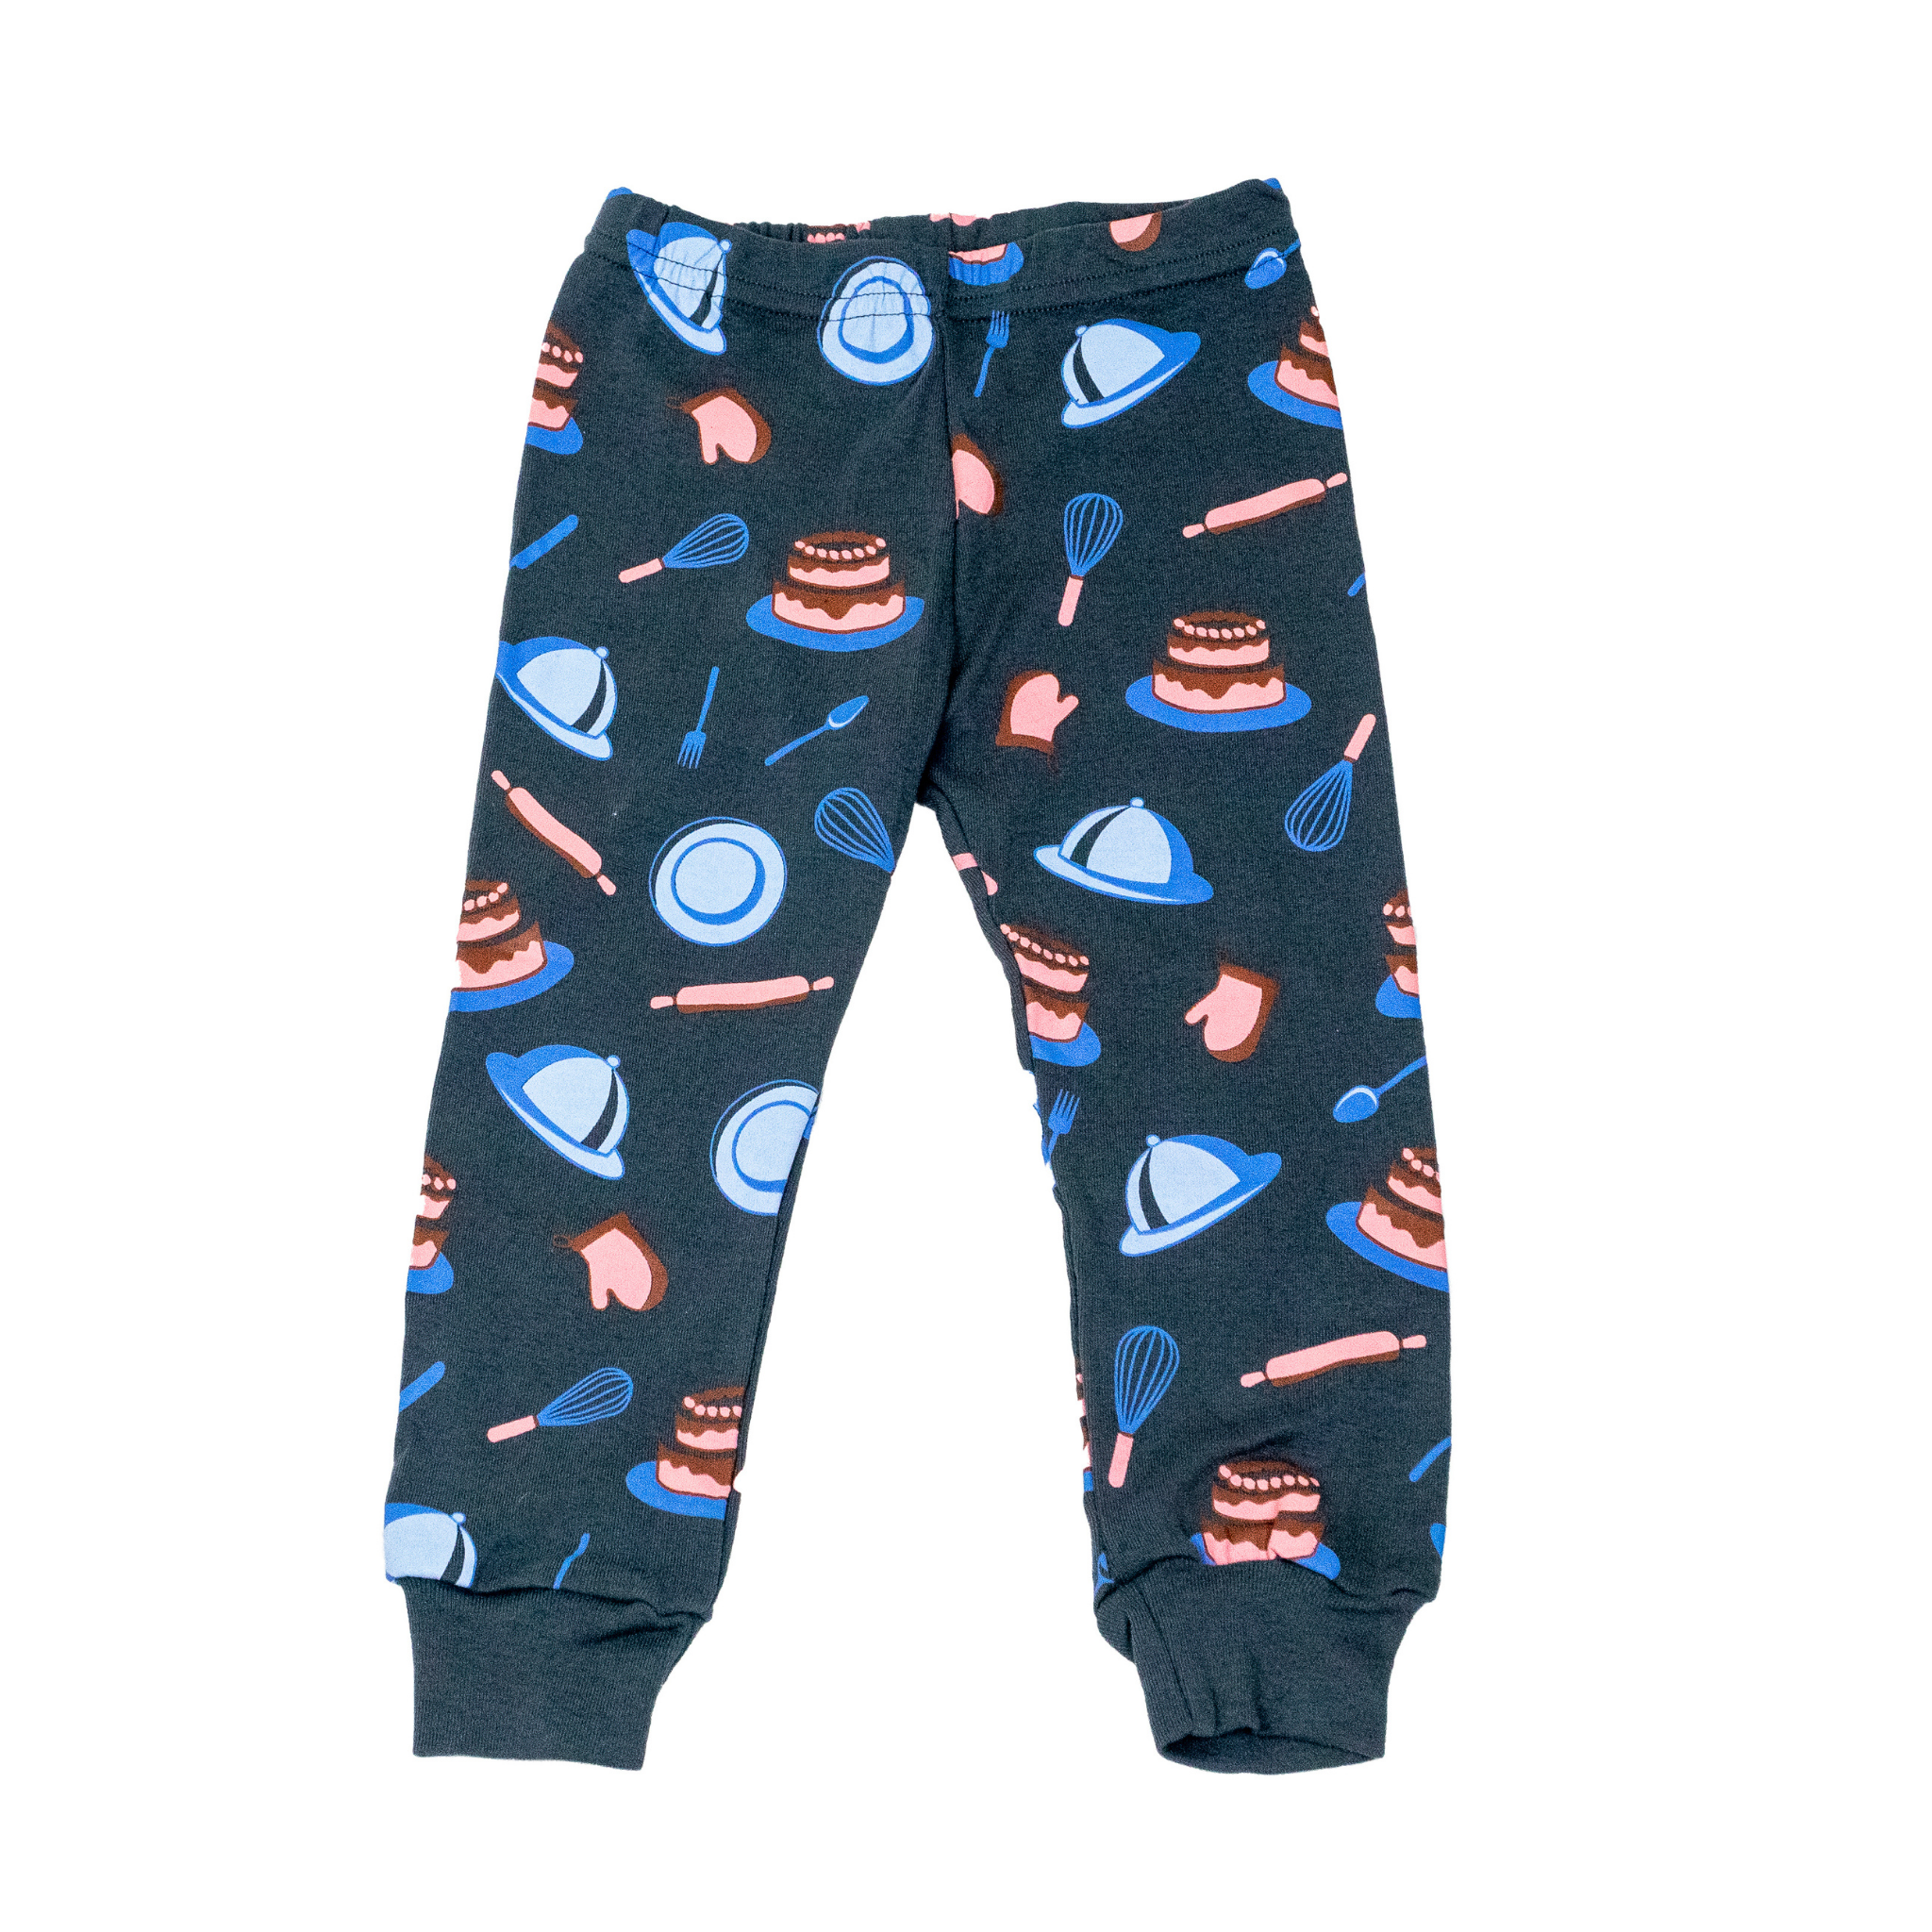 Pajama pants for boys